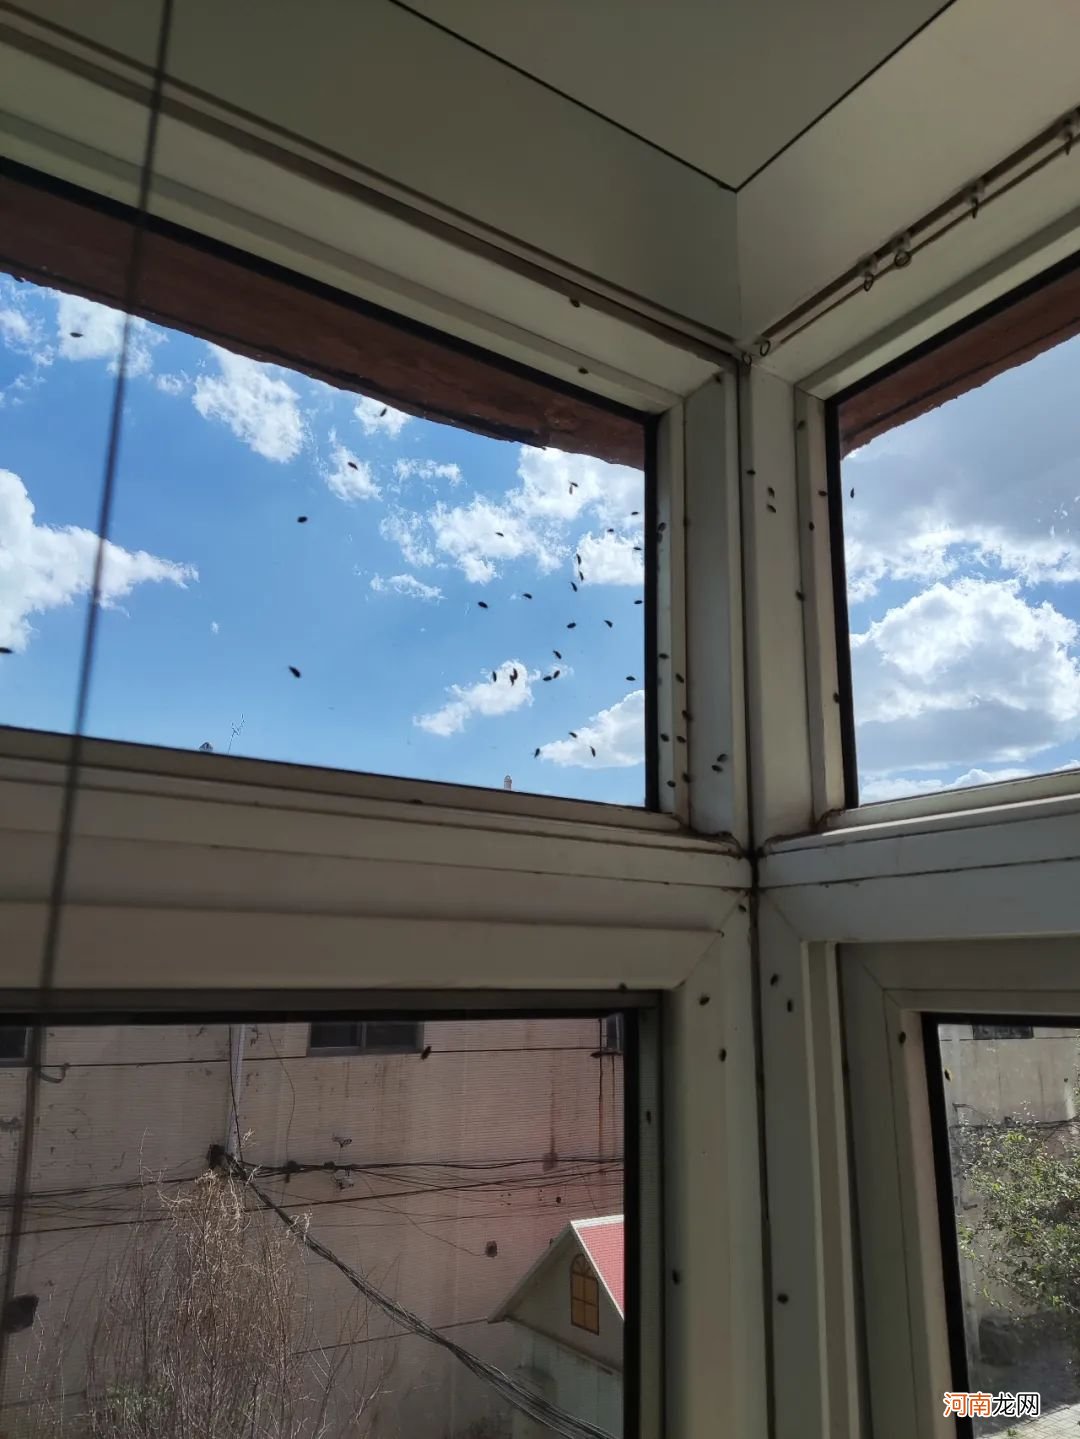 你的窗户上有这样的小飞虫吗？ 家里窗户上有小飞虫吗？